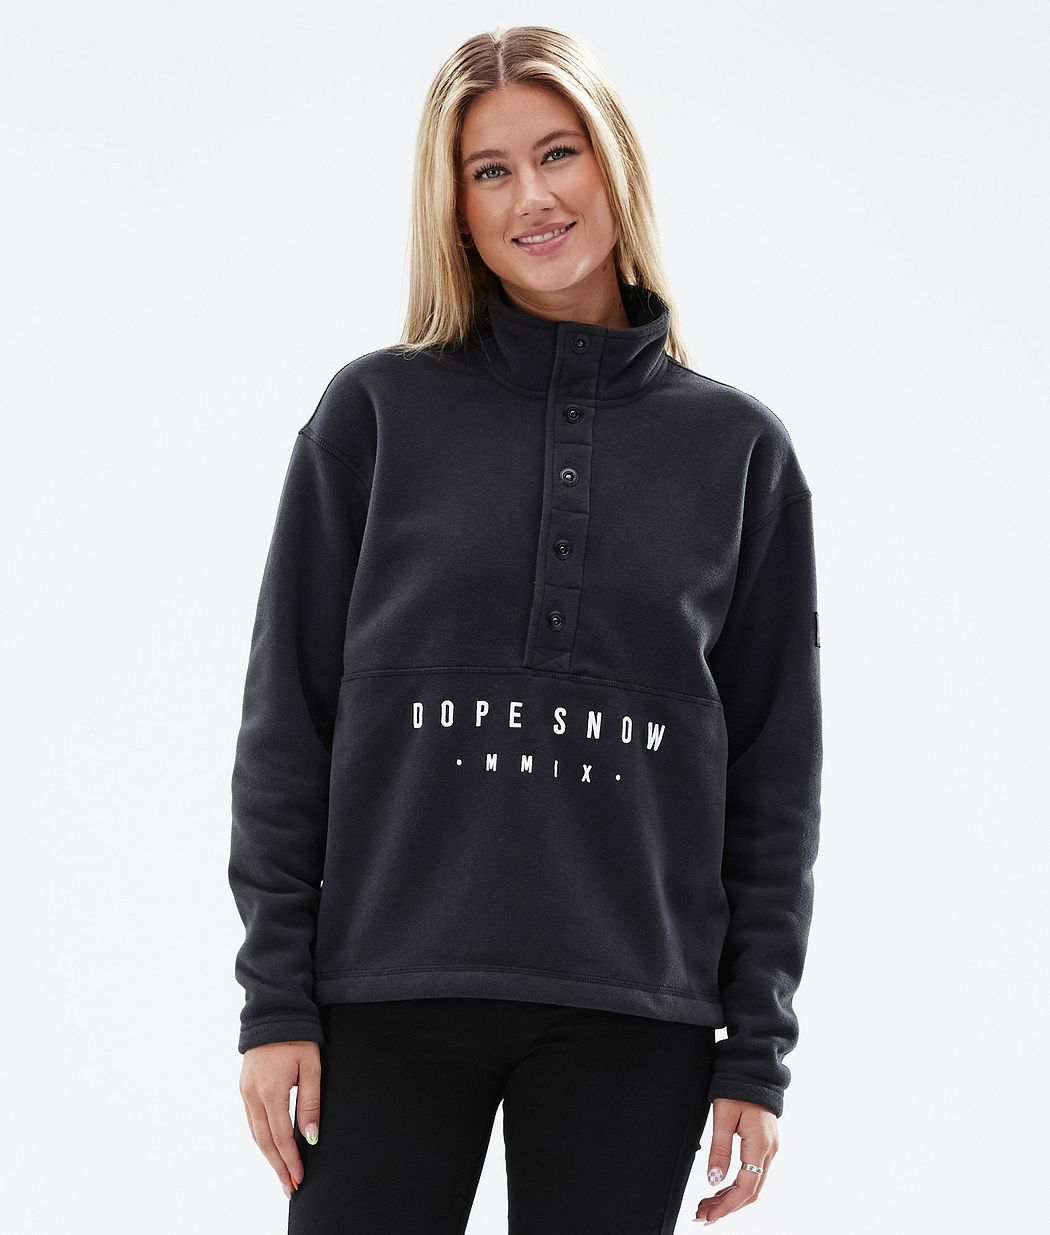 Comfy W Fleece Sweater Women Black